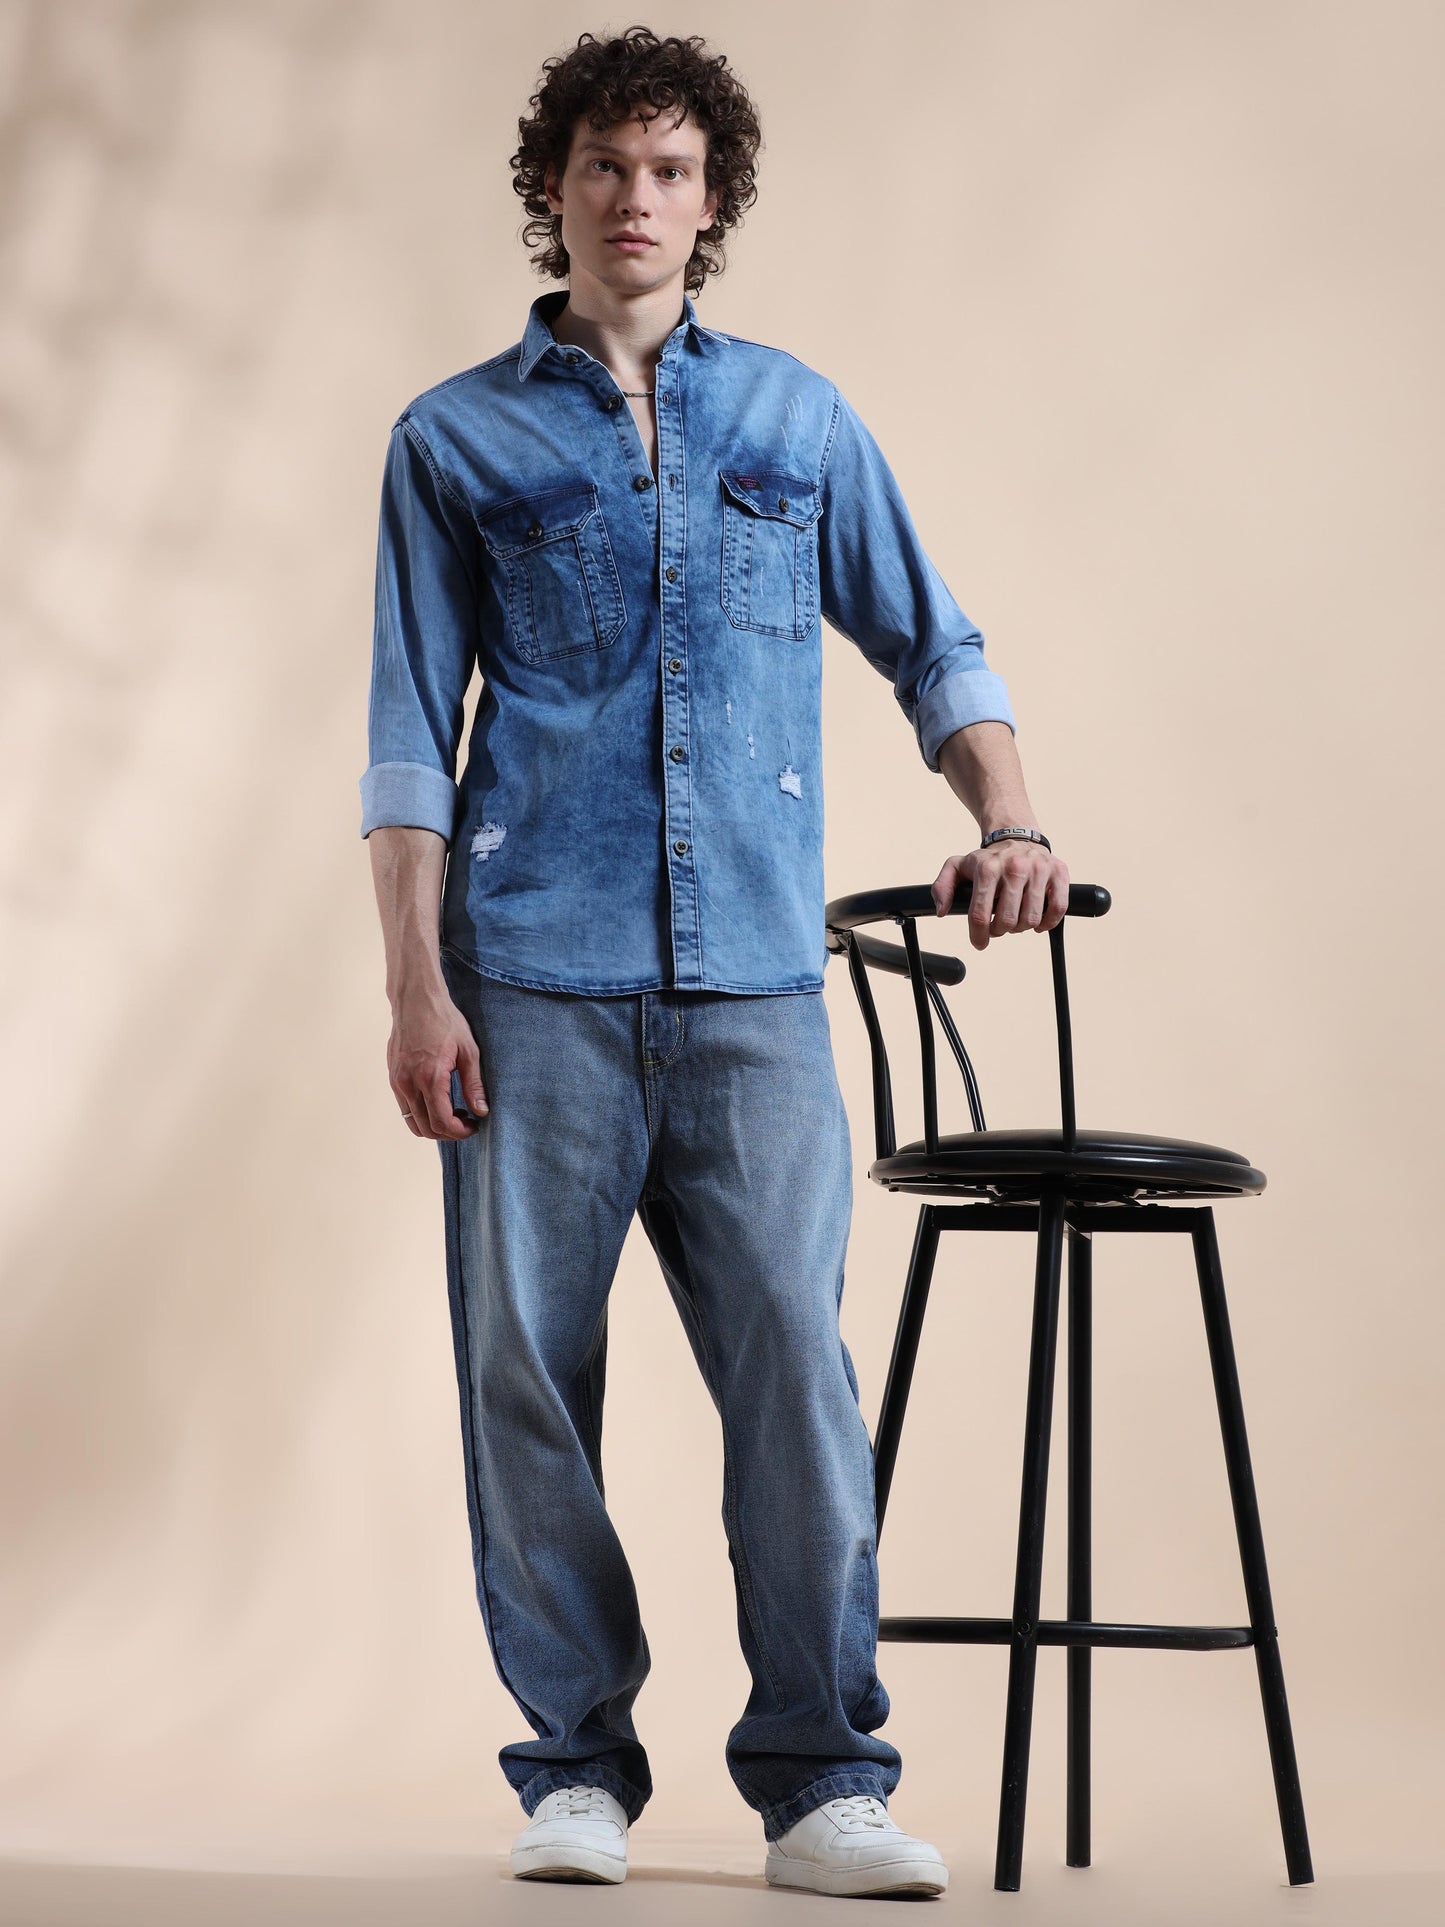 Tealish Blue Denim Jeans Shirt for Mens 